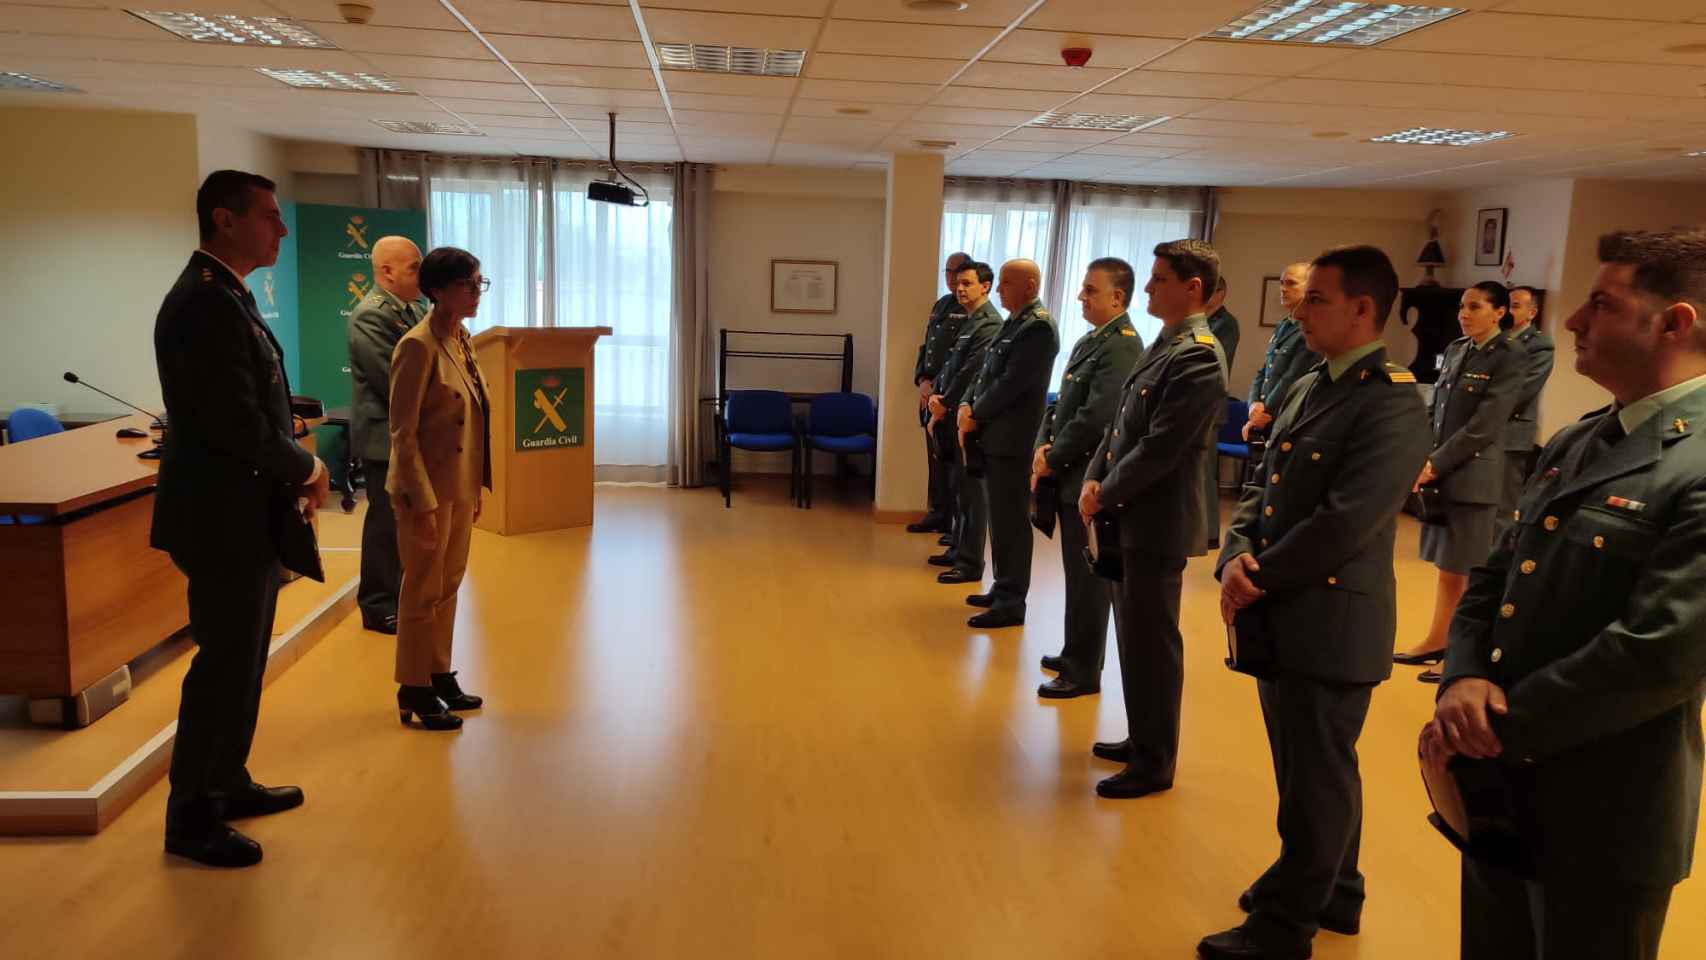 La directora general de la Guardia Civil inaugura el 'Puesto del Veterano' en la Comandancia de Palencia